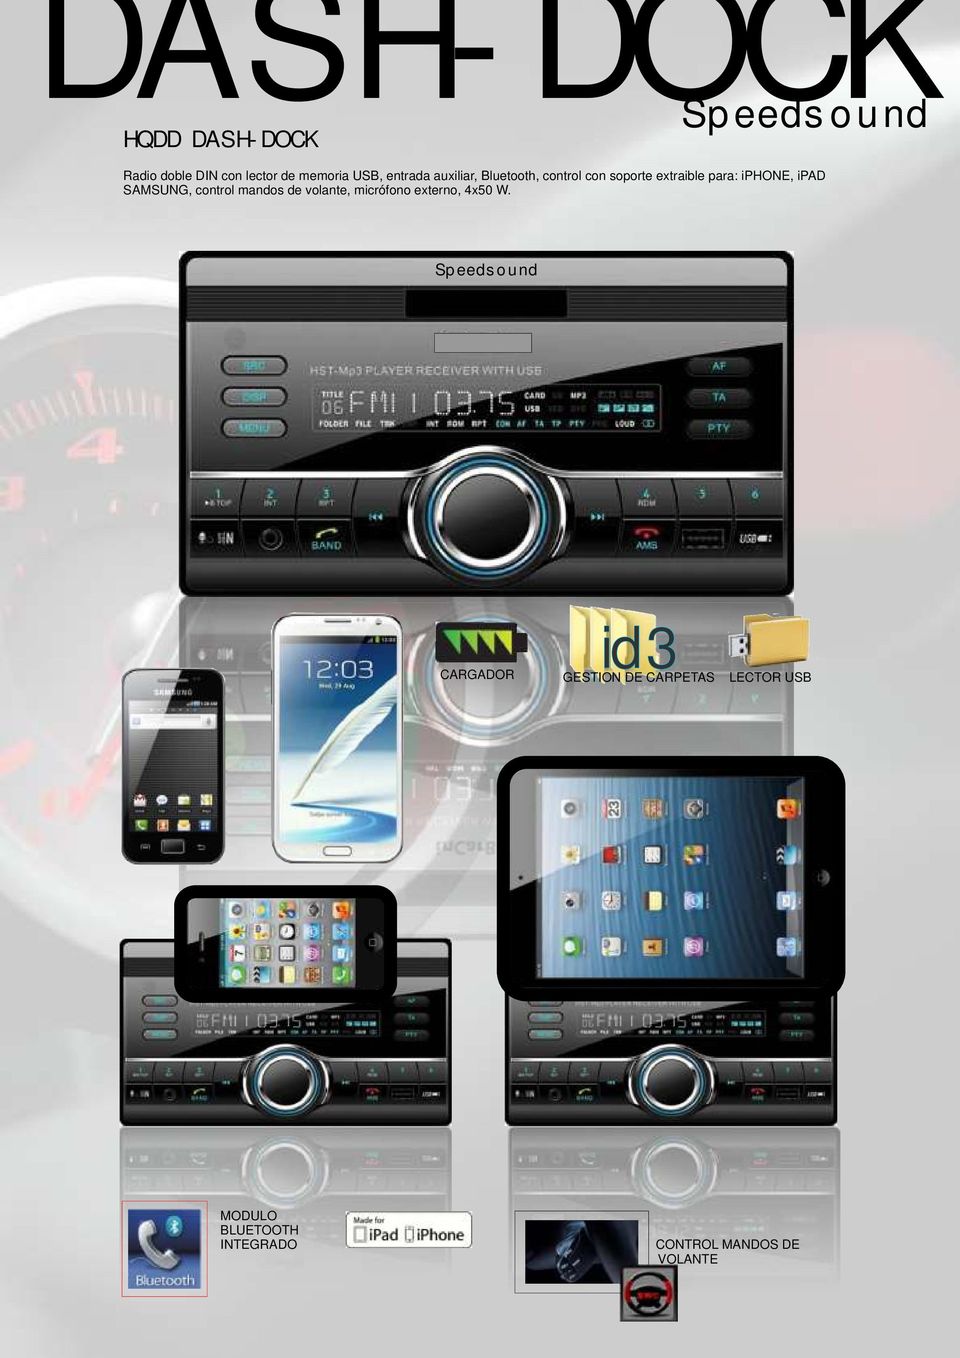 SAMSUNG, control mandos de volante, micrófono externo, 4x50 W.